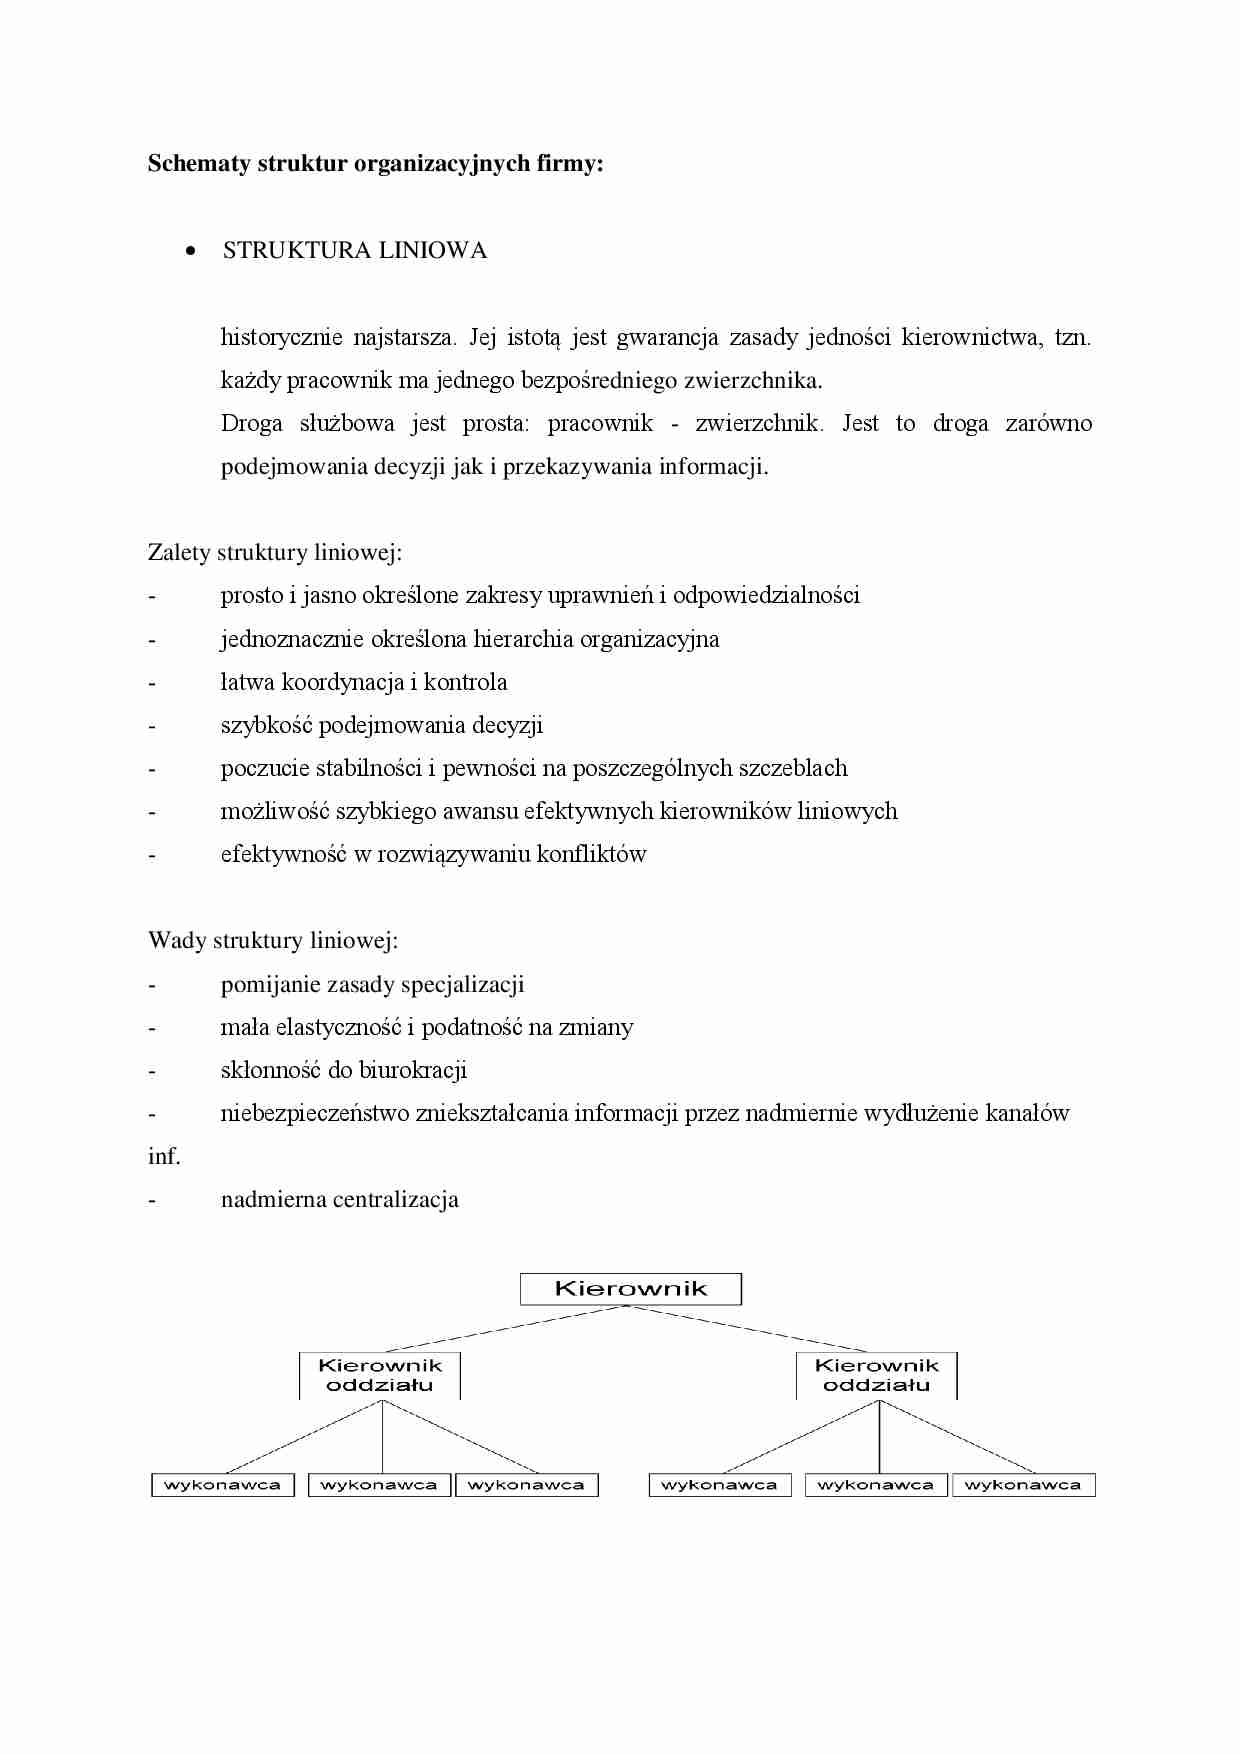 Schematy struktur organizacyjnych firmy - omówienie - Struktura liniowa - strona 1